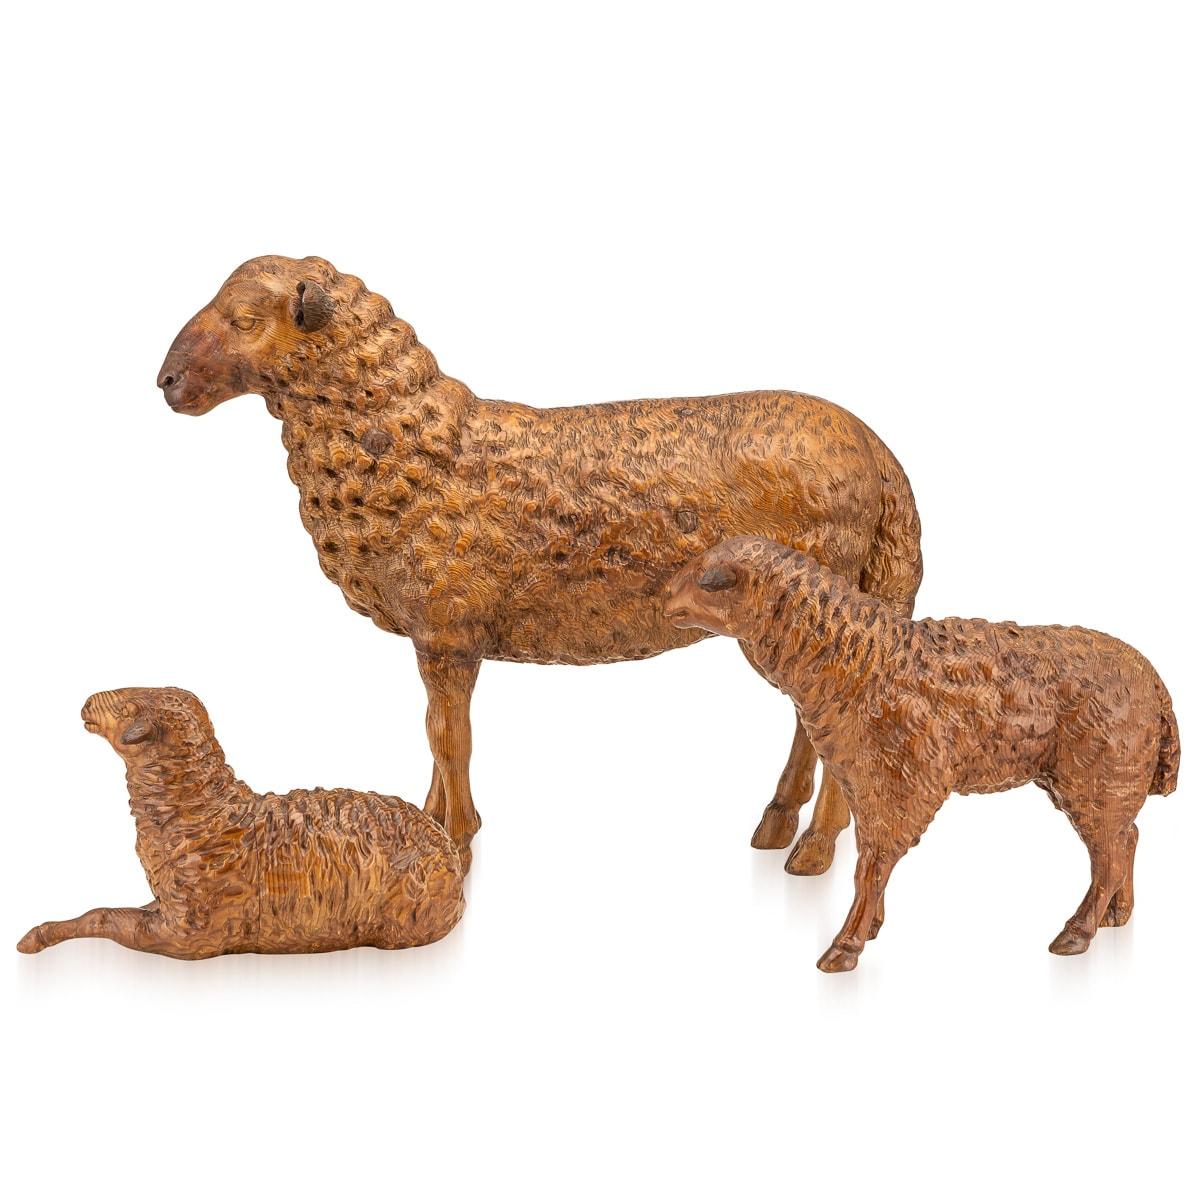 Anciennes figurines de moutons sculptées dans la Forêt Noire au 19e siècle, utilisées comme accessoires pour une nativité de Noël. Ces objets étaient généralement rachetés par des touristes en provenance de la frontière entre la Suisse et